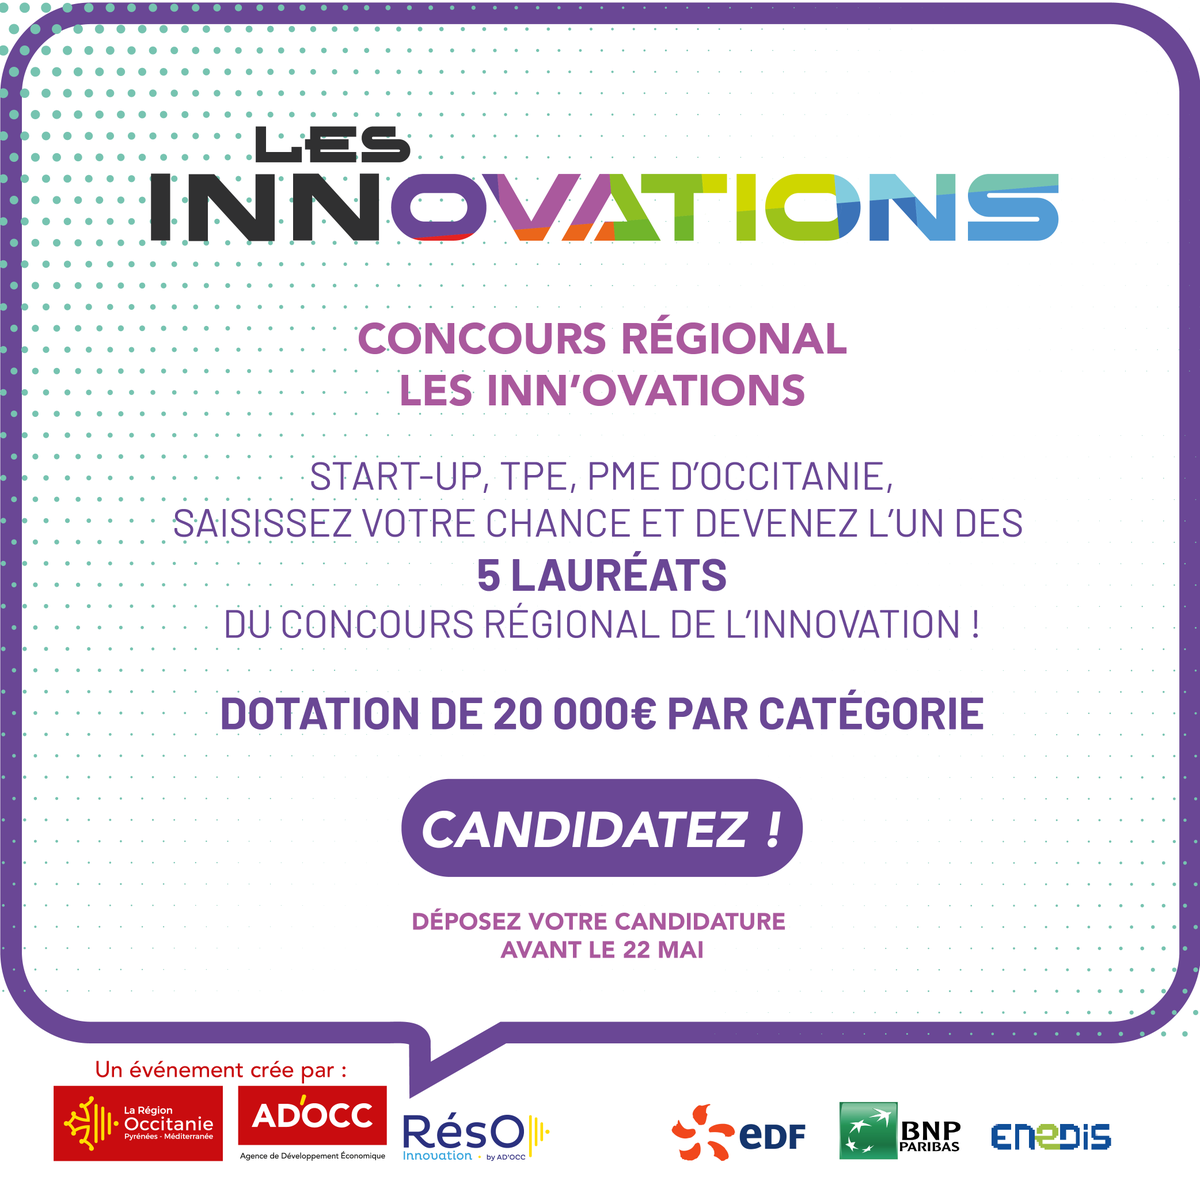 Serez vous le prochain lauréat du concours #LesInnOvations d'@Occitanie ? 🚀 Vous avez jusqu'au 22 mai pour candidater ! 💡Cette année, 5 catégories d'#innovation sont représentées pour départager les meilleures candidatures Pour en savoir plus👉ow.ly/WsWi50R6yrI